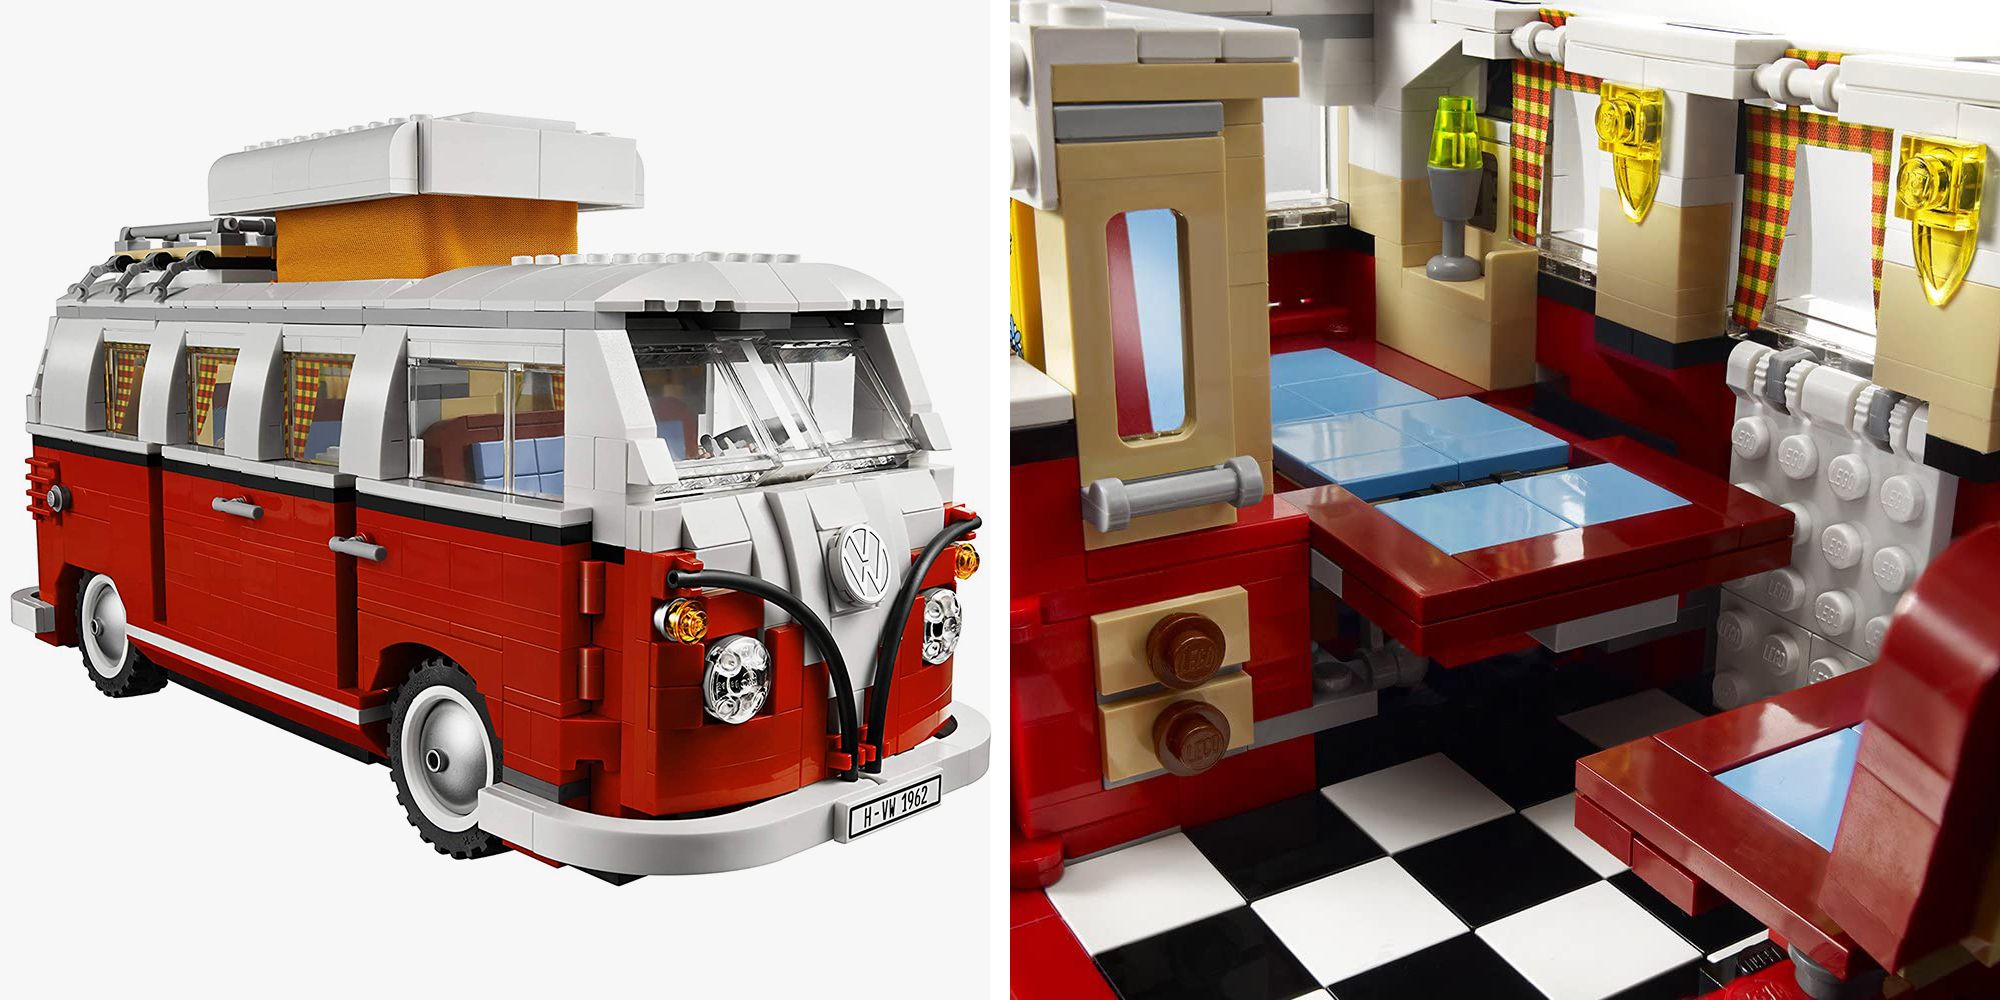 Verrijking Resistent fee This 1,334-Piece LEGO Set Will Allow You to Build a Miniature 1962 Volkswagen  Camper Van